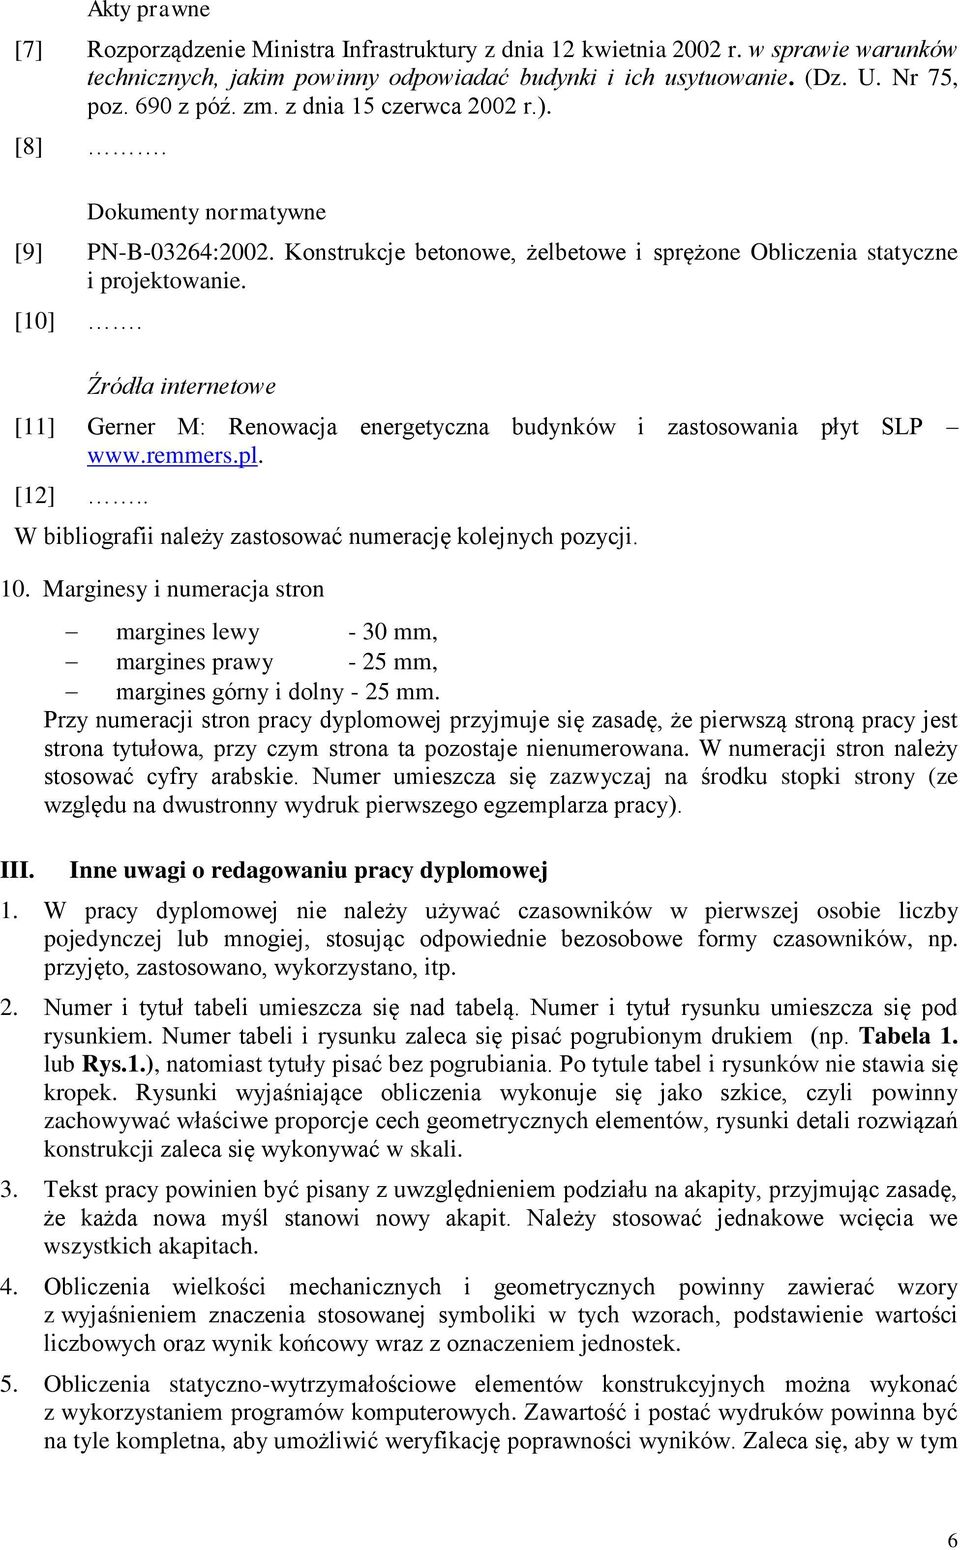 Źródła internetowe [11] Gerner M: Renowacja energetyczna budynków i zastosowania płyt SLP www.remmers.pl. [12].. W bibliografii należy zastosować numerację kolejnych pozycji. 10.